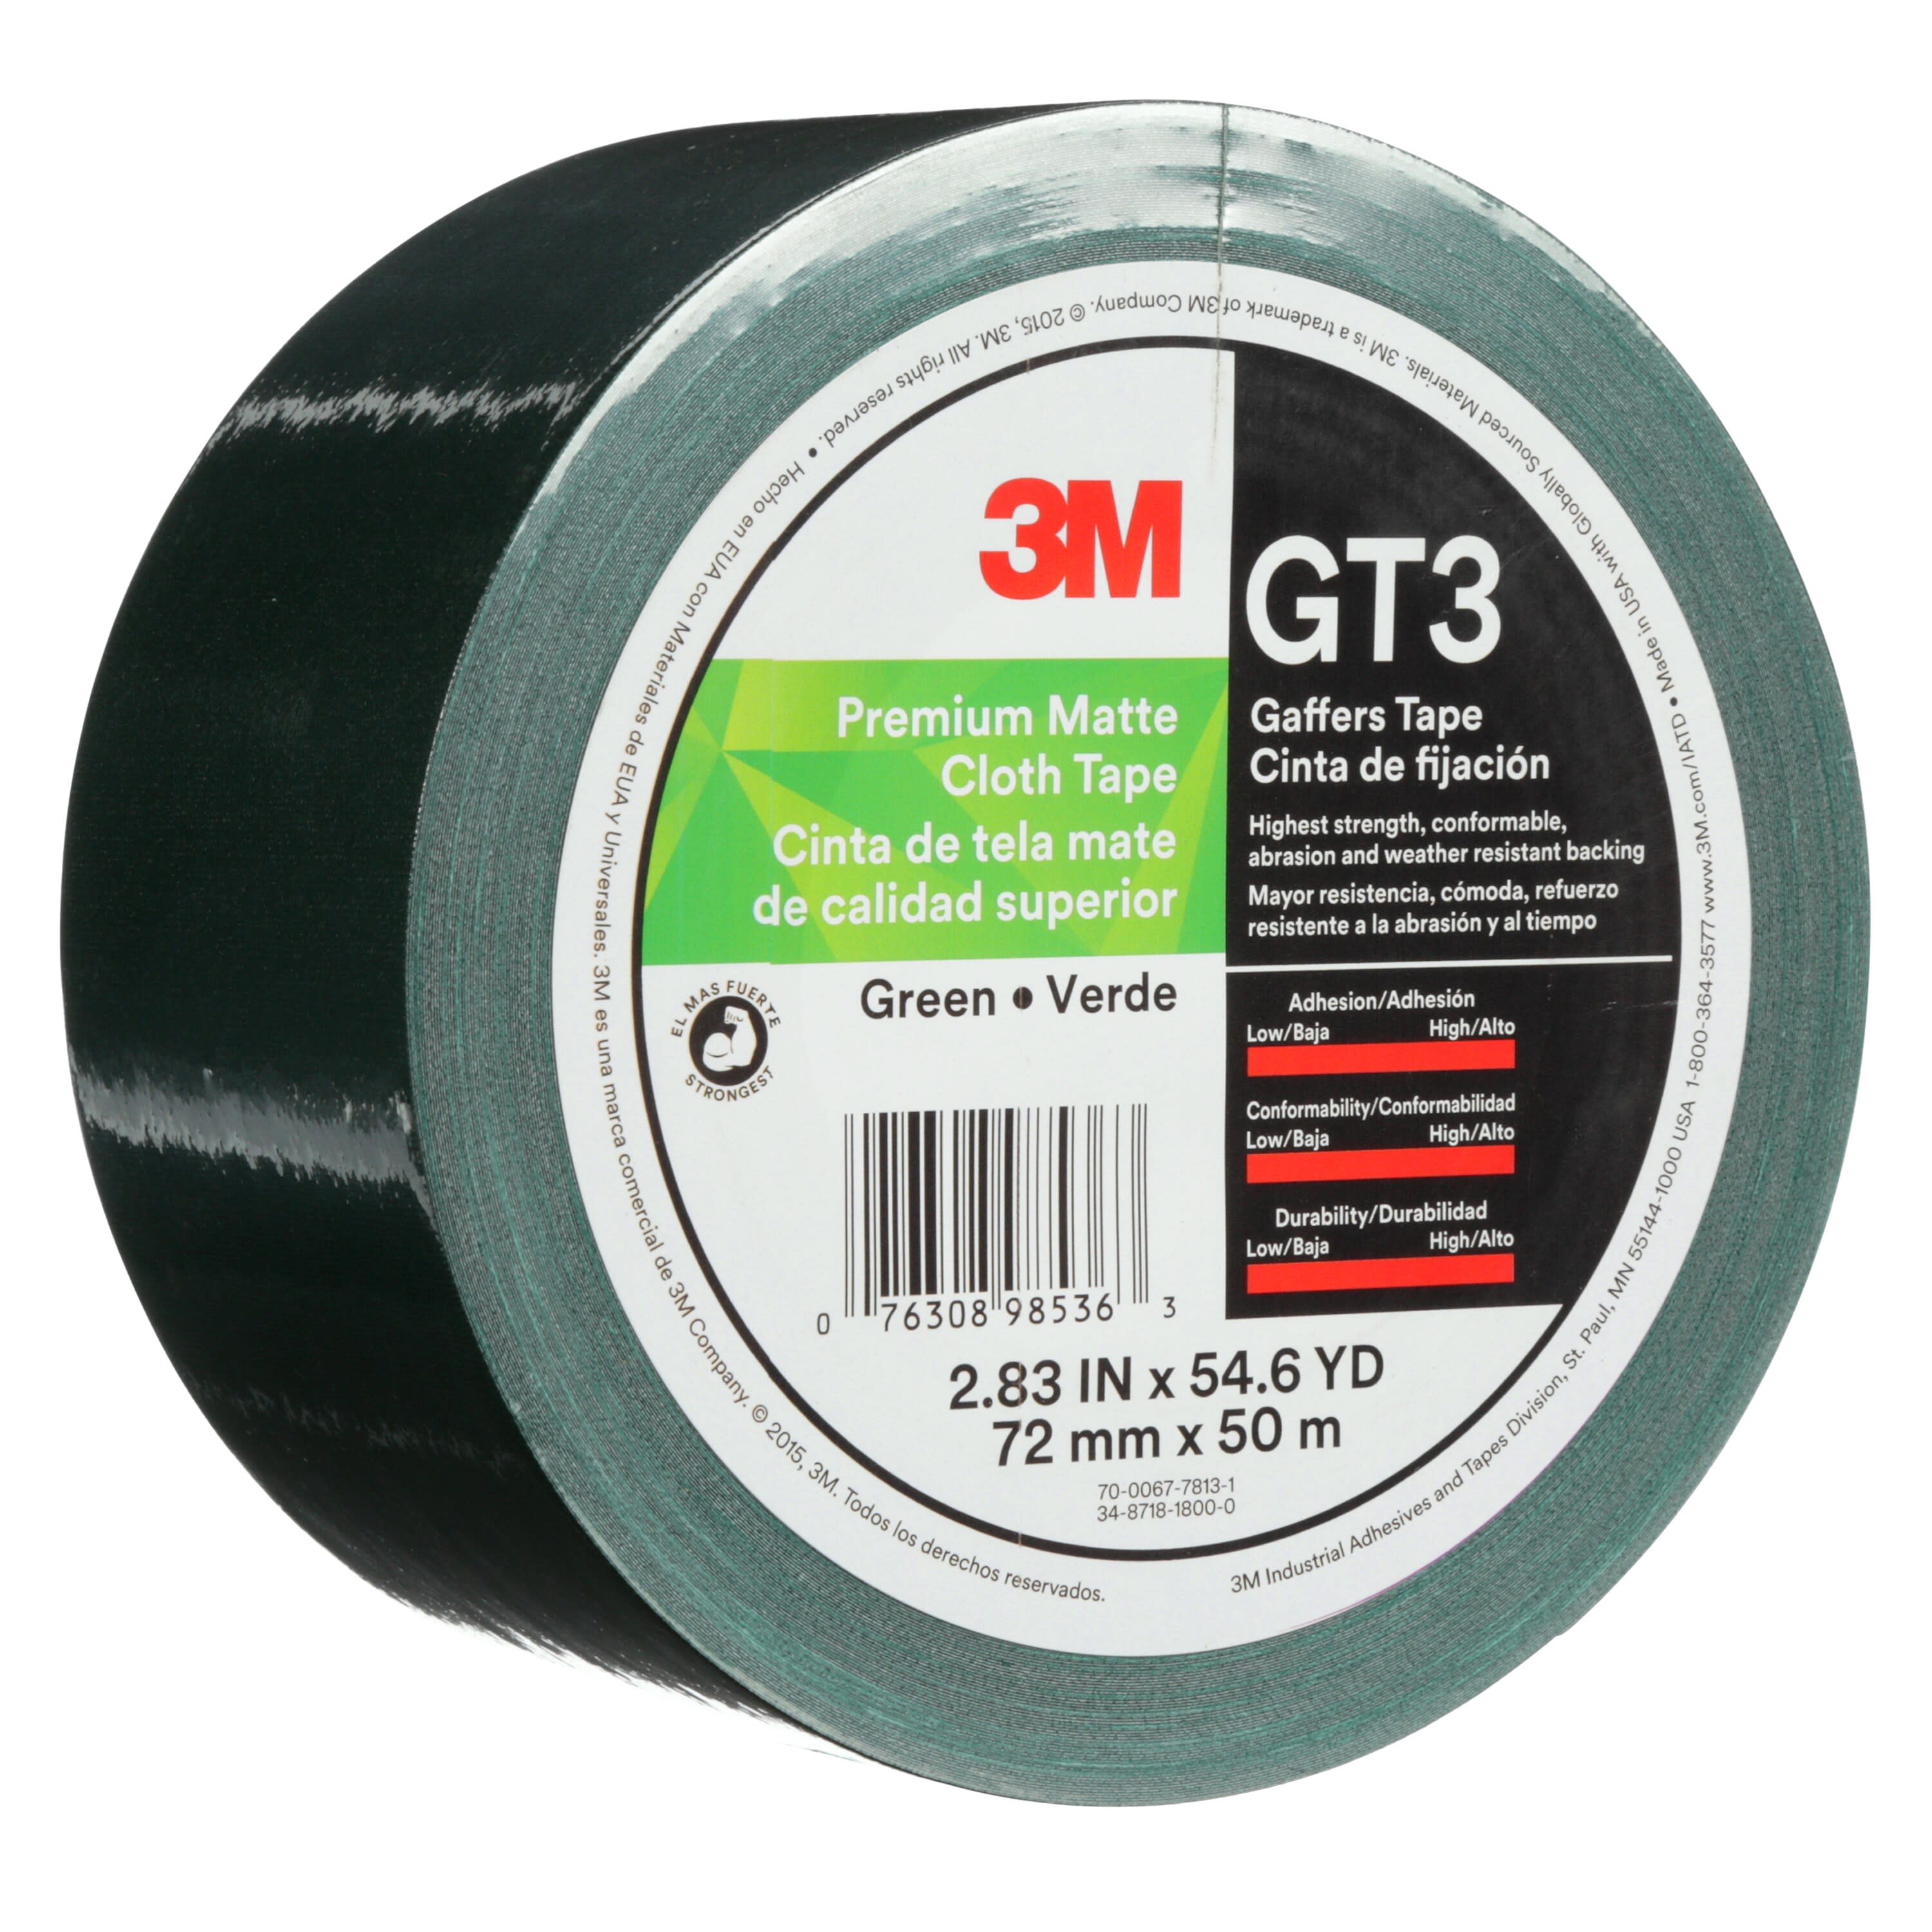 3M™ Premium Matte Cloth (Gaffers) Tape GT3, Green, 72 mm x 50 m, 11 mil,
16 per case